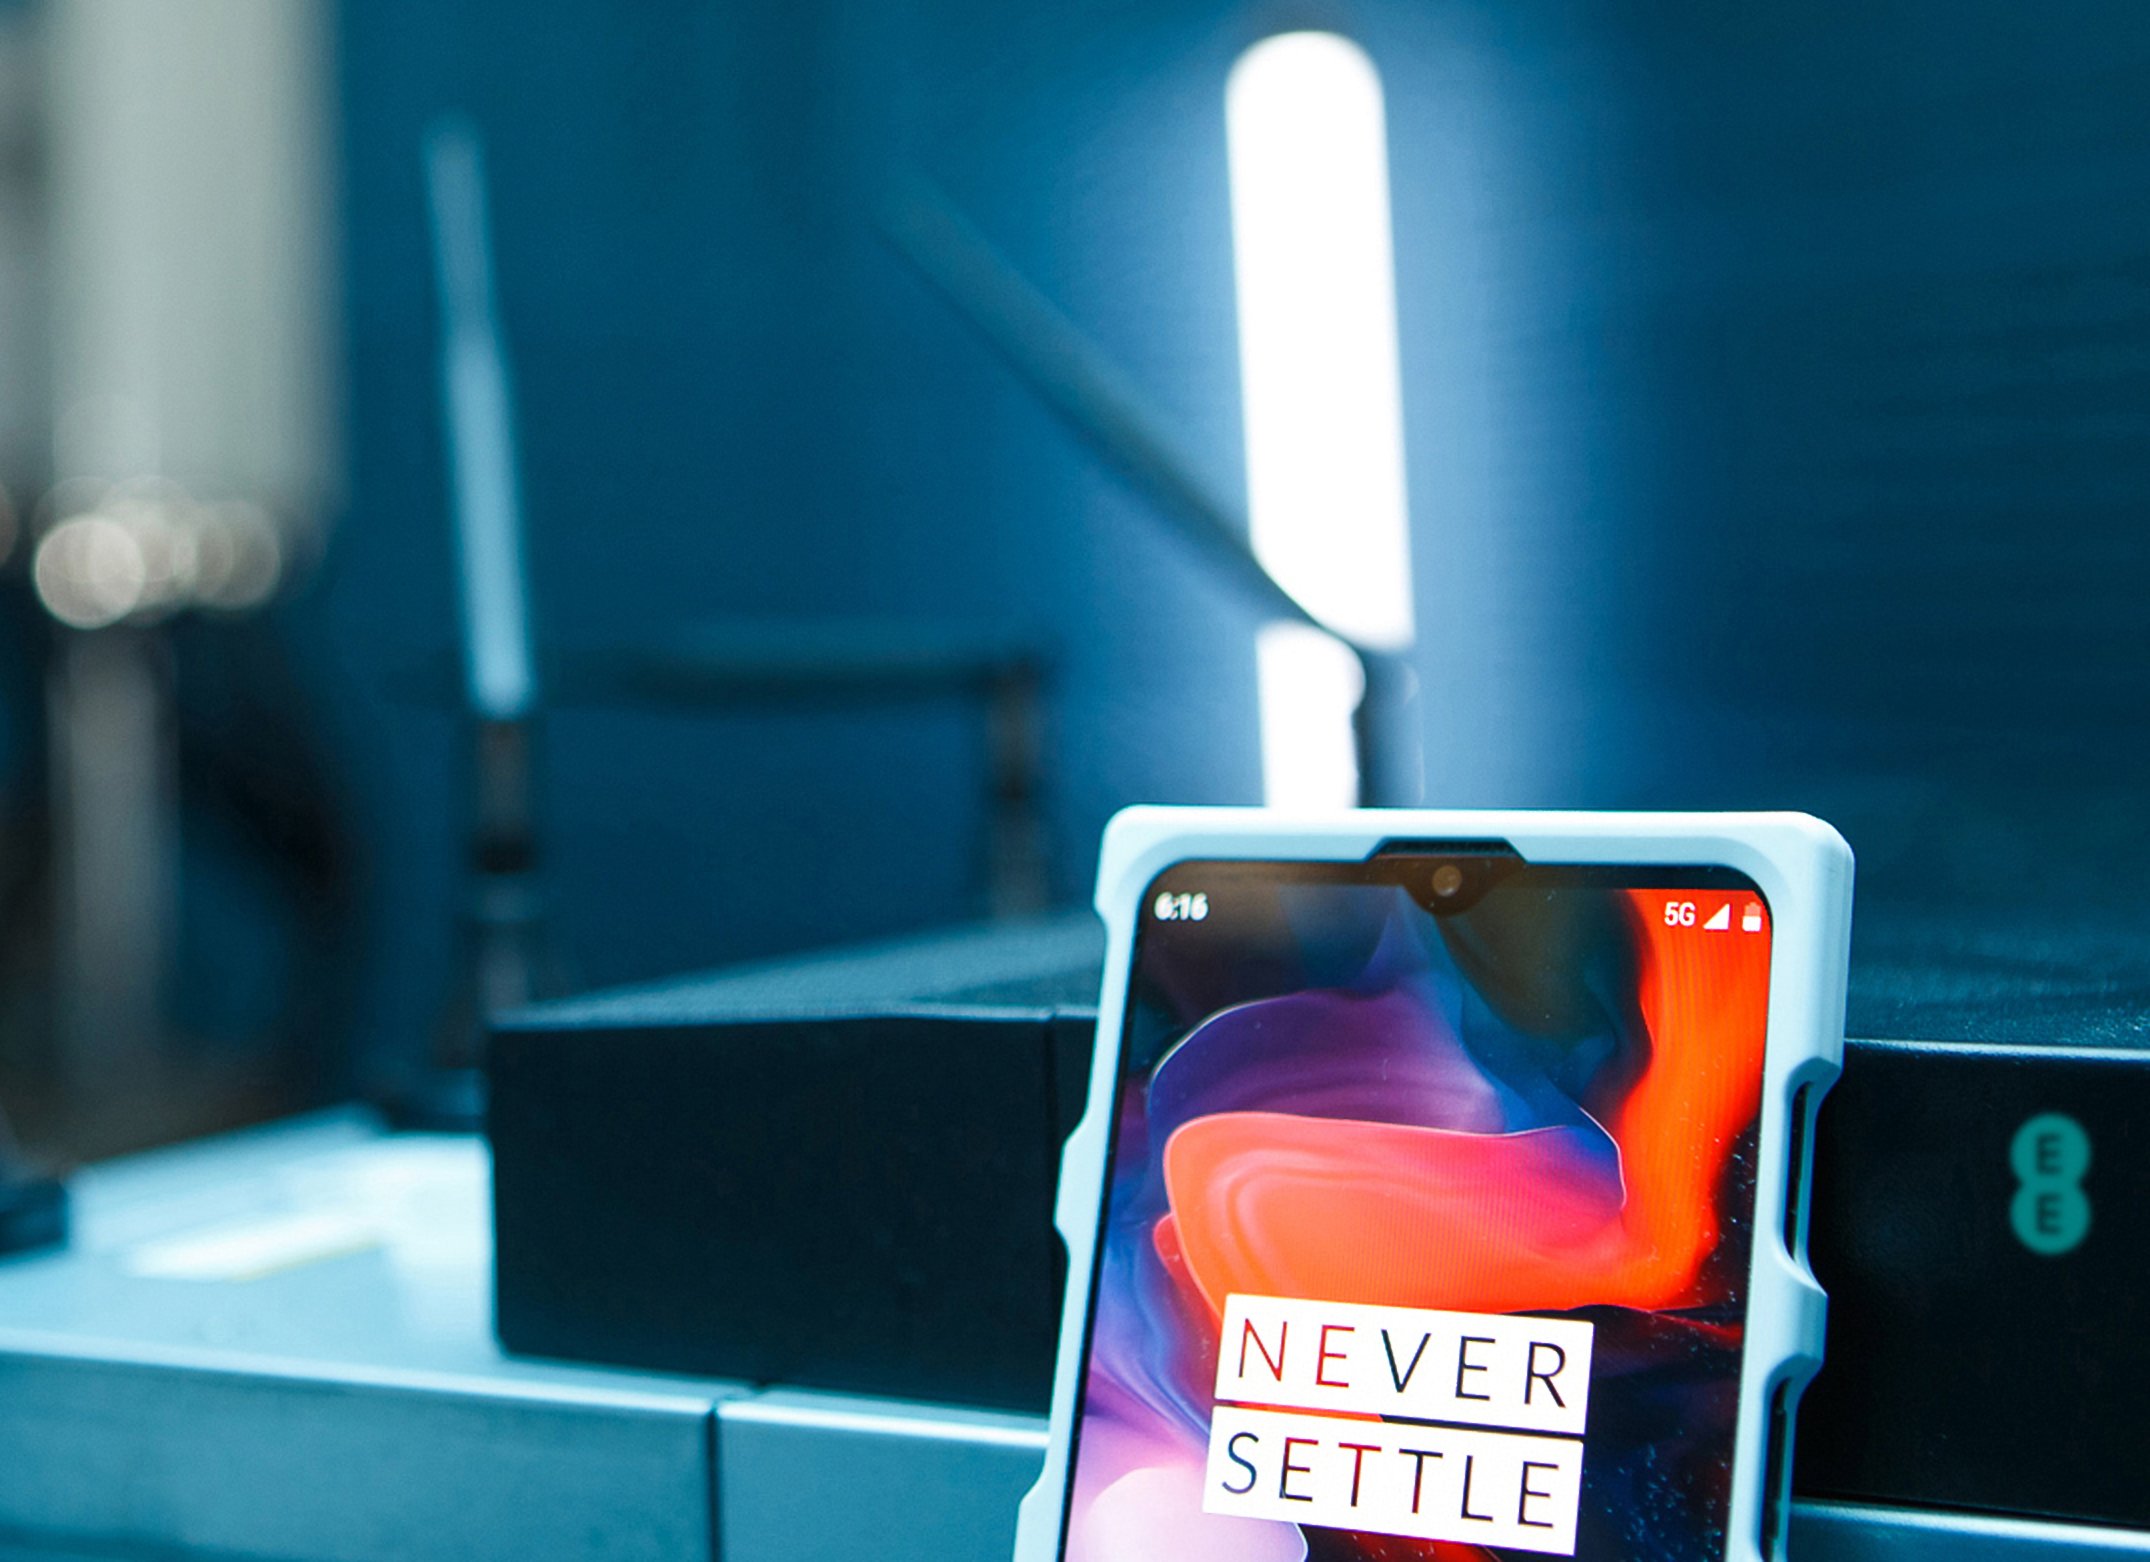 OnePlus mostrará el prototipo de su smartphone 5G en el MWC 2019